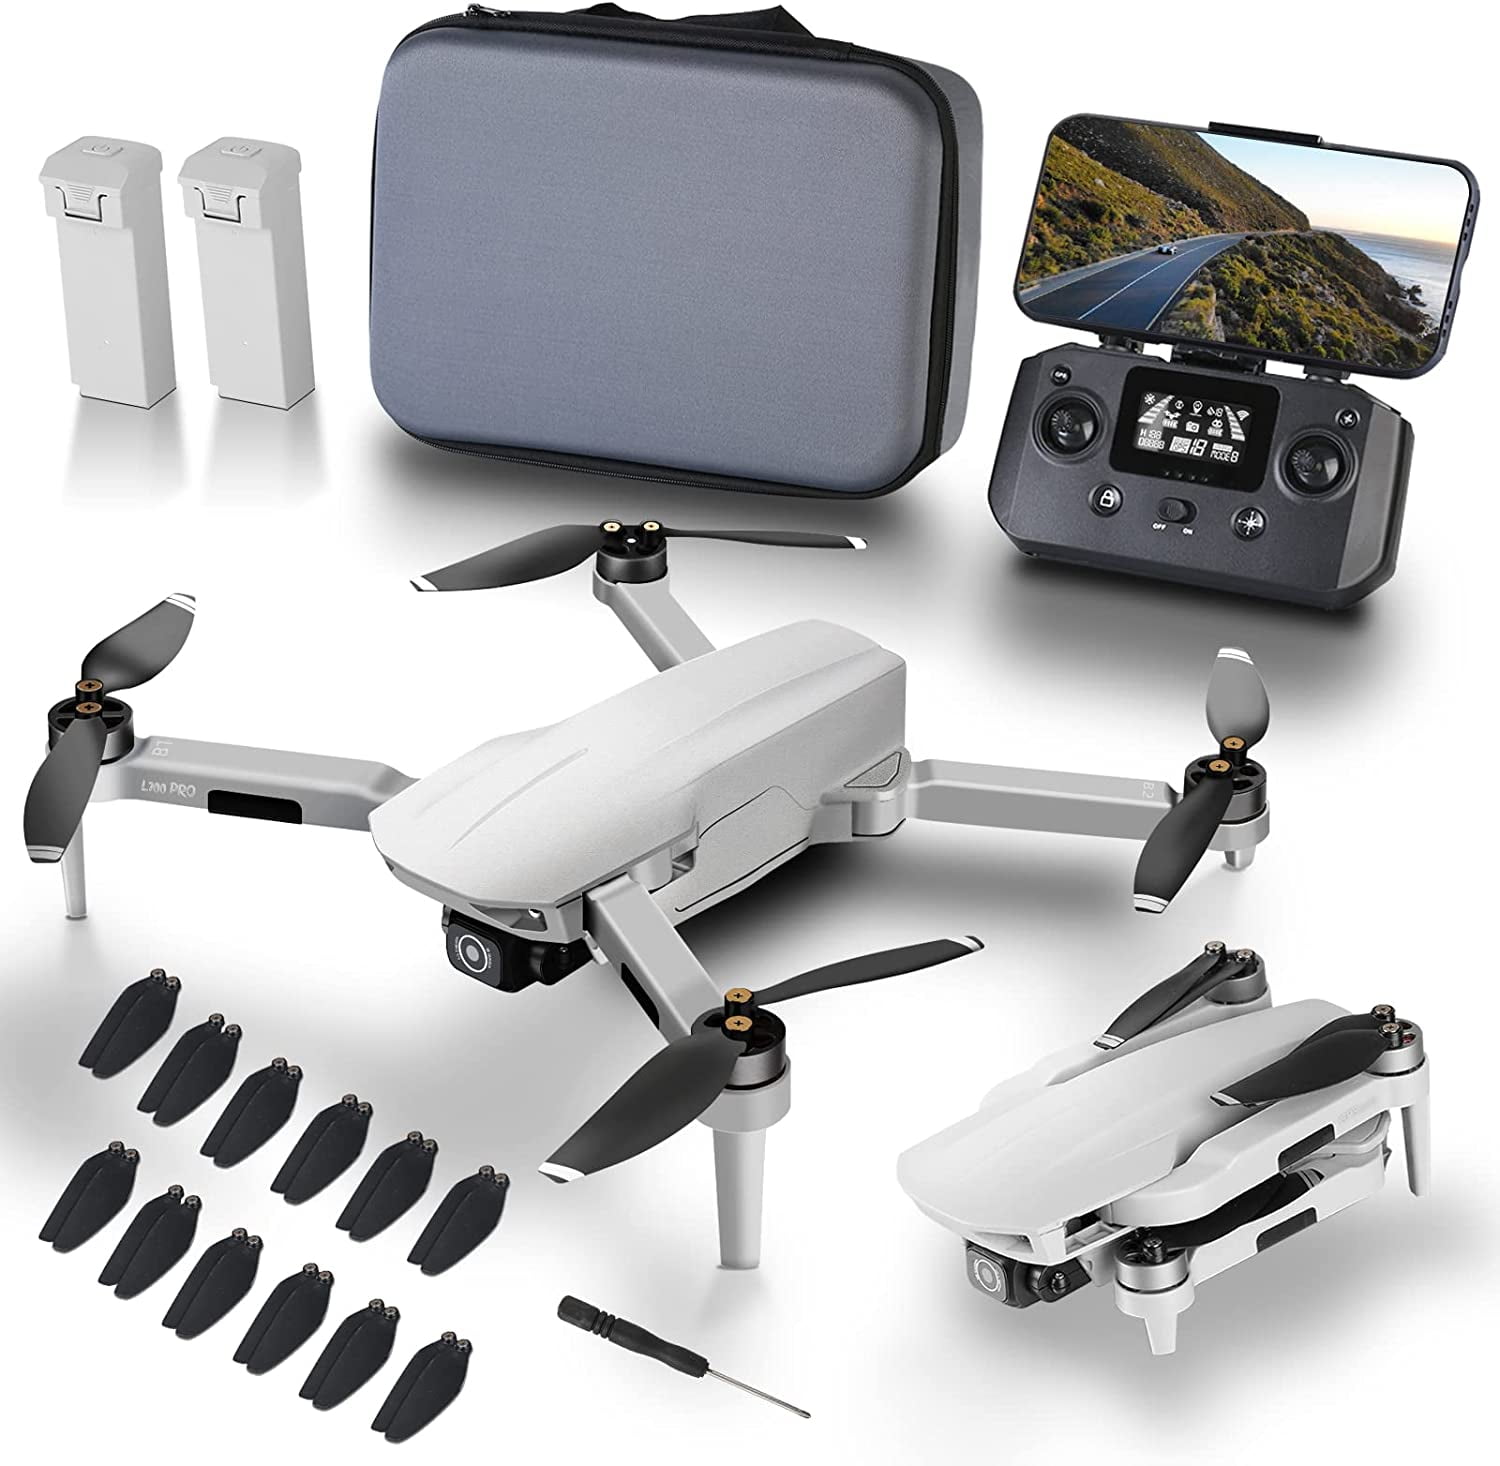 Promo Potensic dreamer drone avec caméra 4k pour adulte 31 minutes